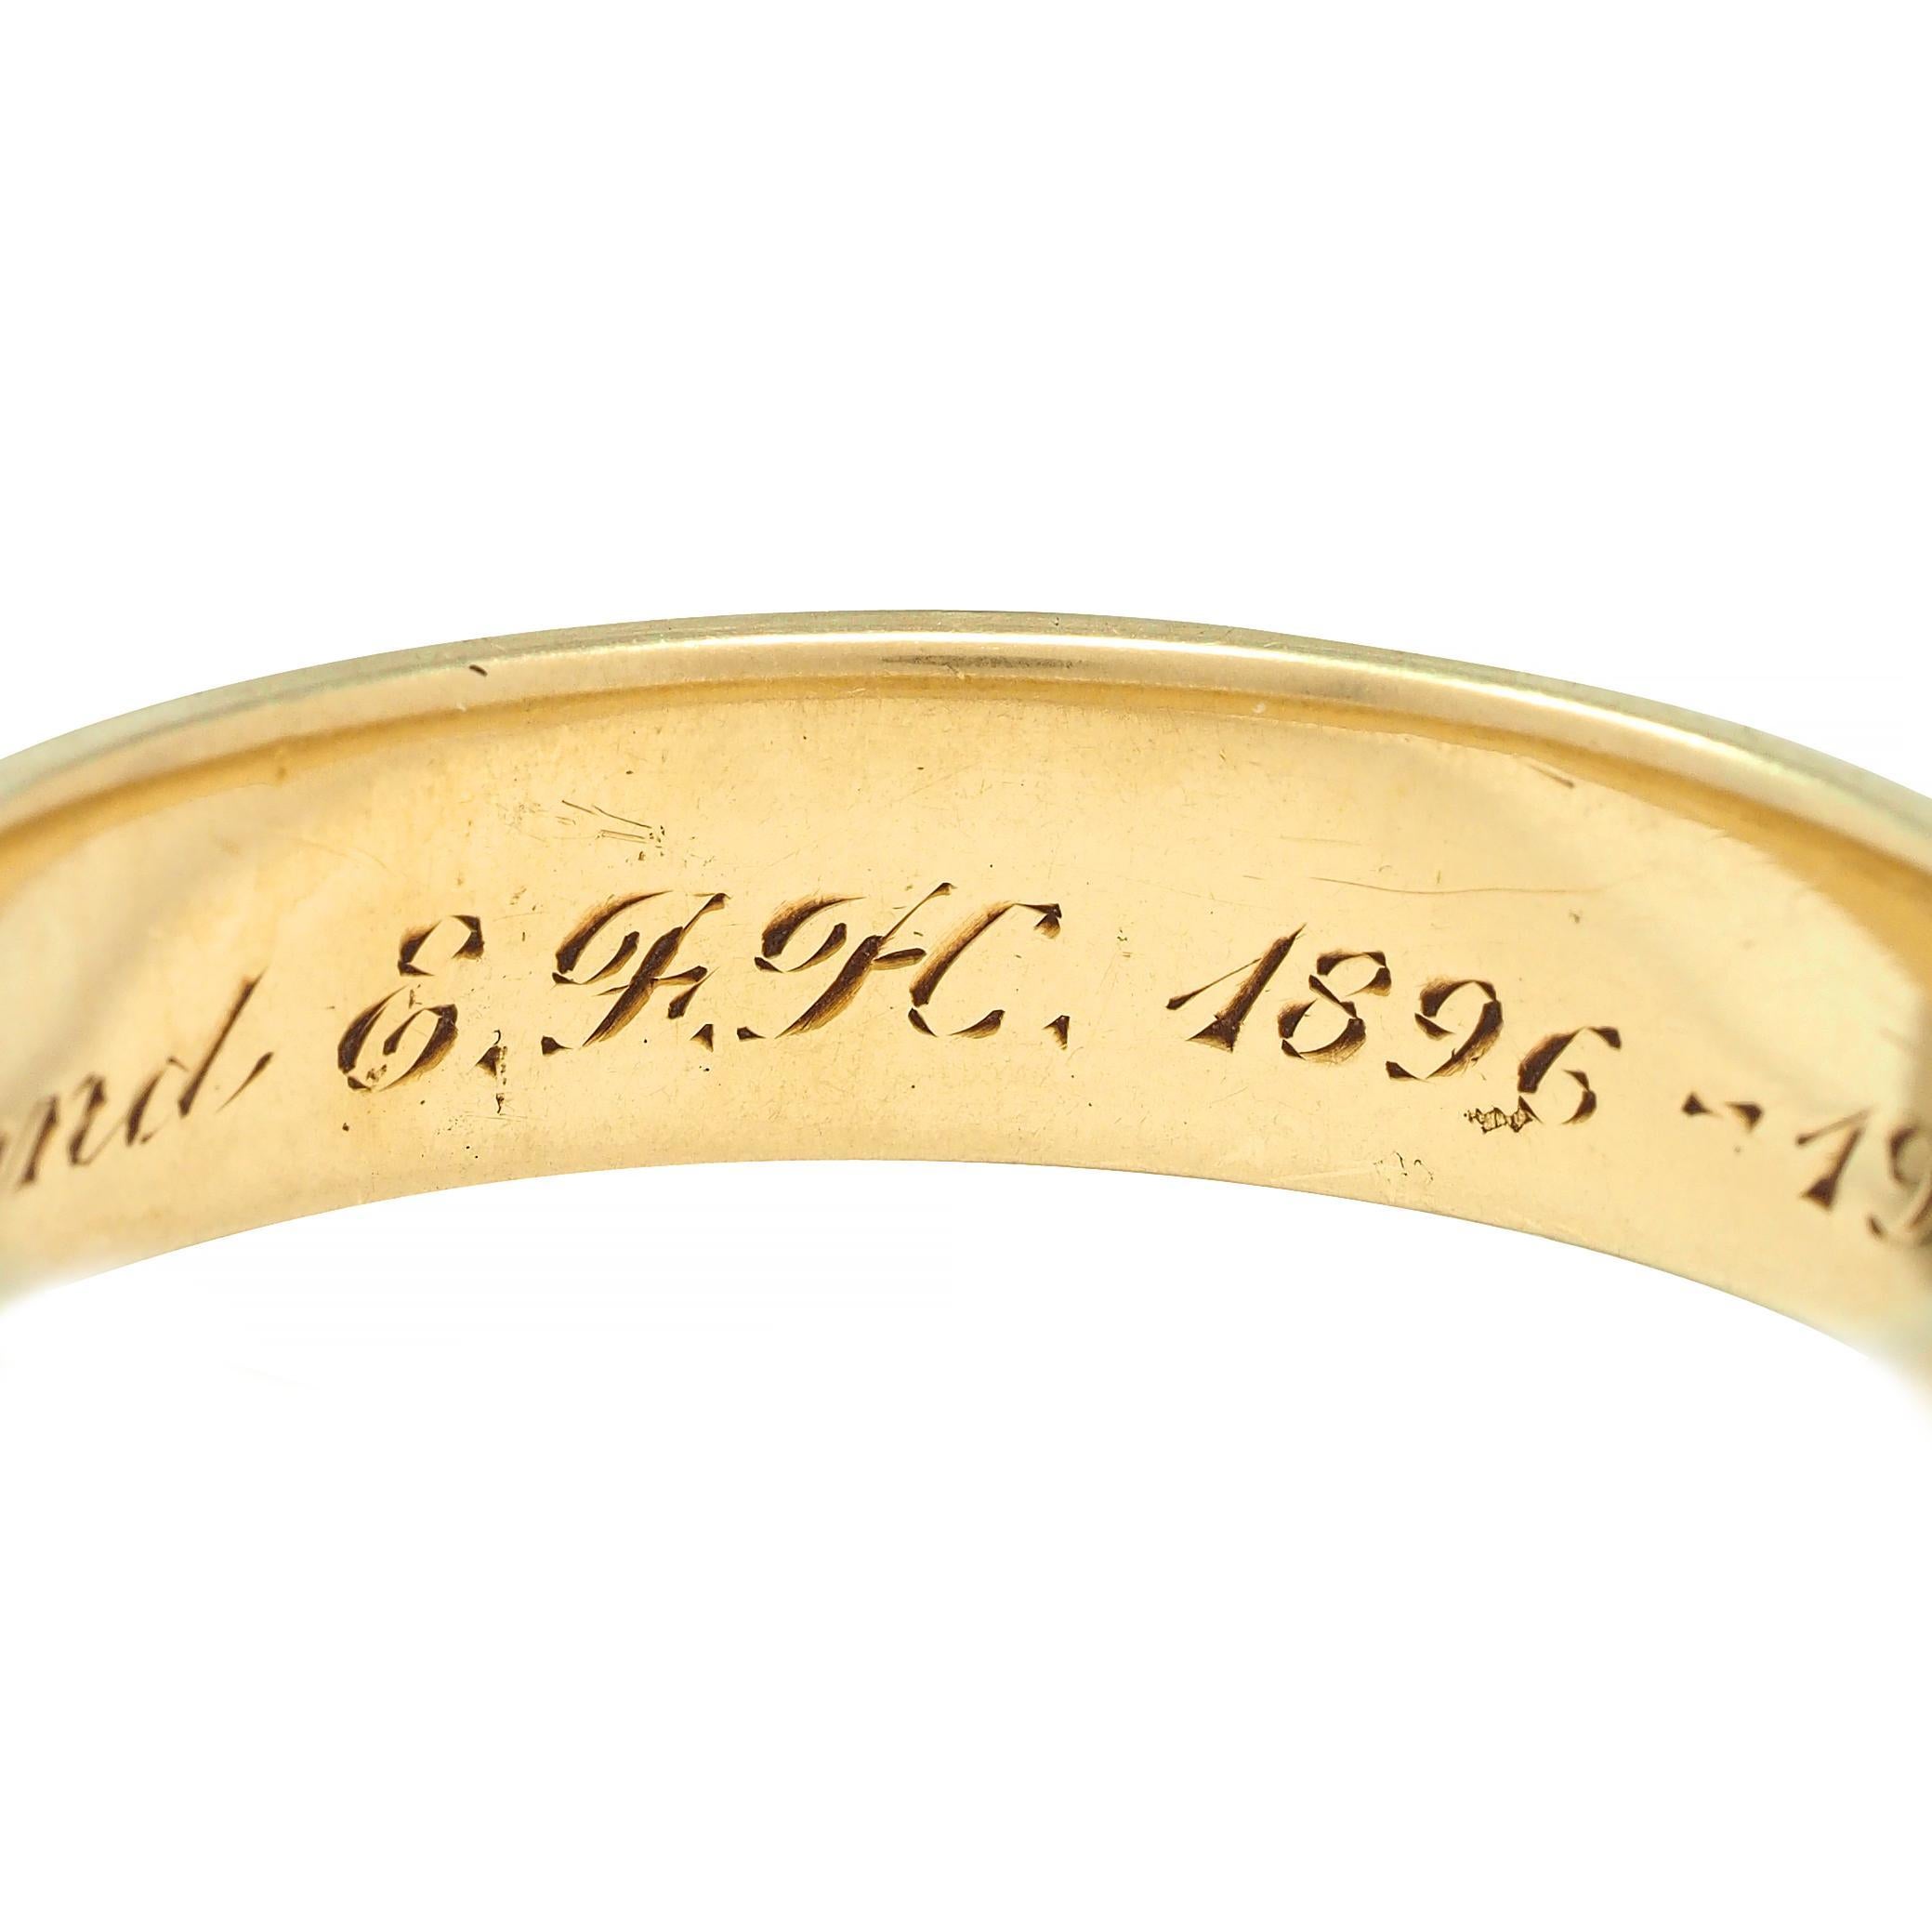 Oakes 1946 14 Karat Yellow Gold Foliate Antique Men's Wedding Band Ring 2